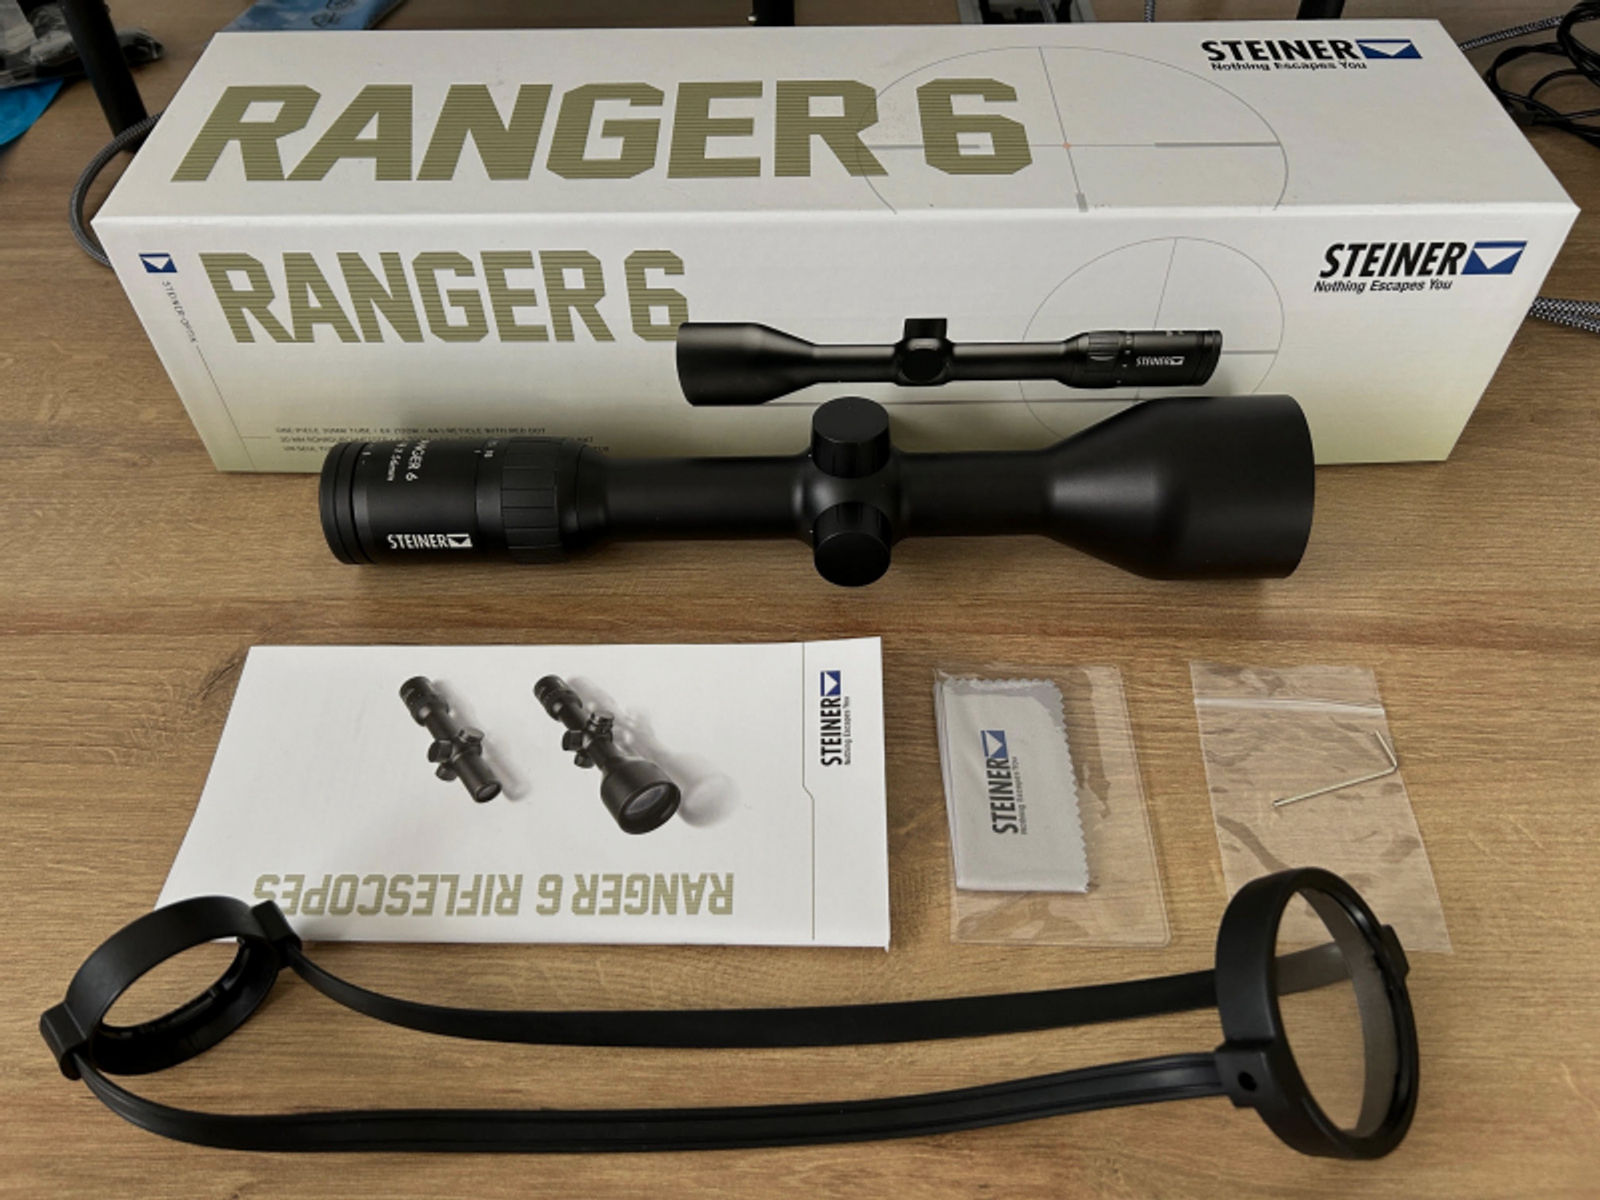 Steiner Ranger 6 3-18x56 Zielfernrohr für die Jagd